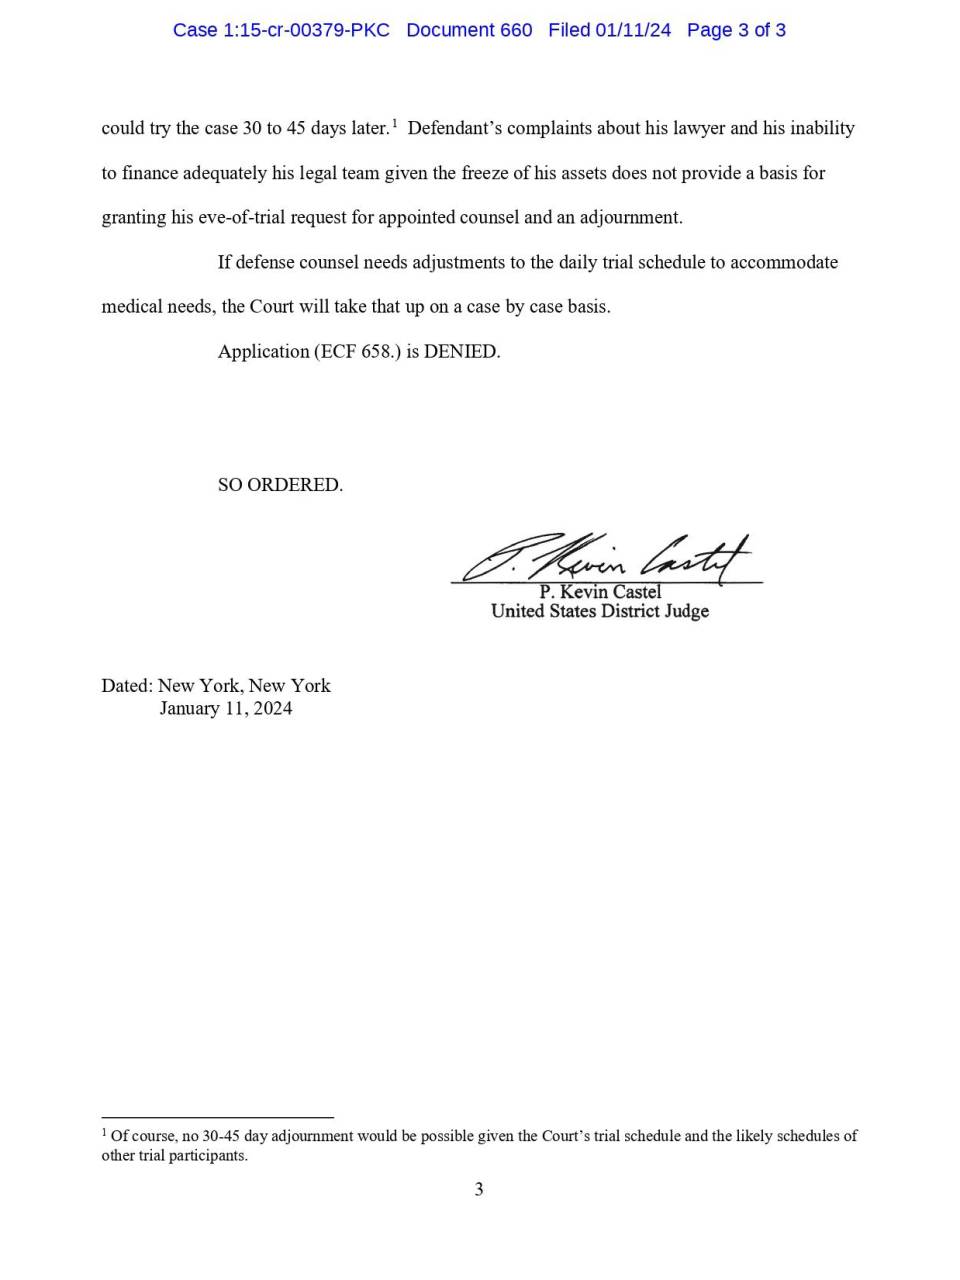 Juez Kevin Castel deniega solicitud de JOH para aplazar su juicio; se mantiene el 5 de febrero